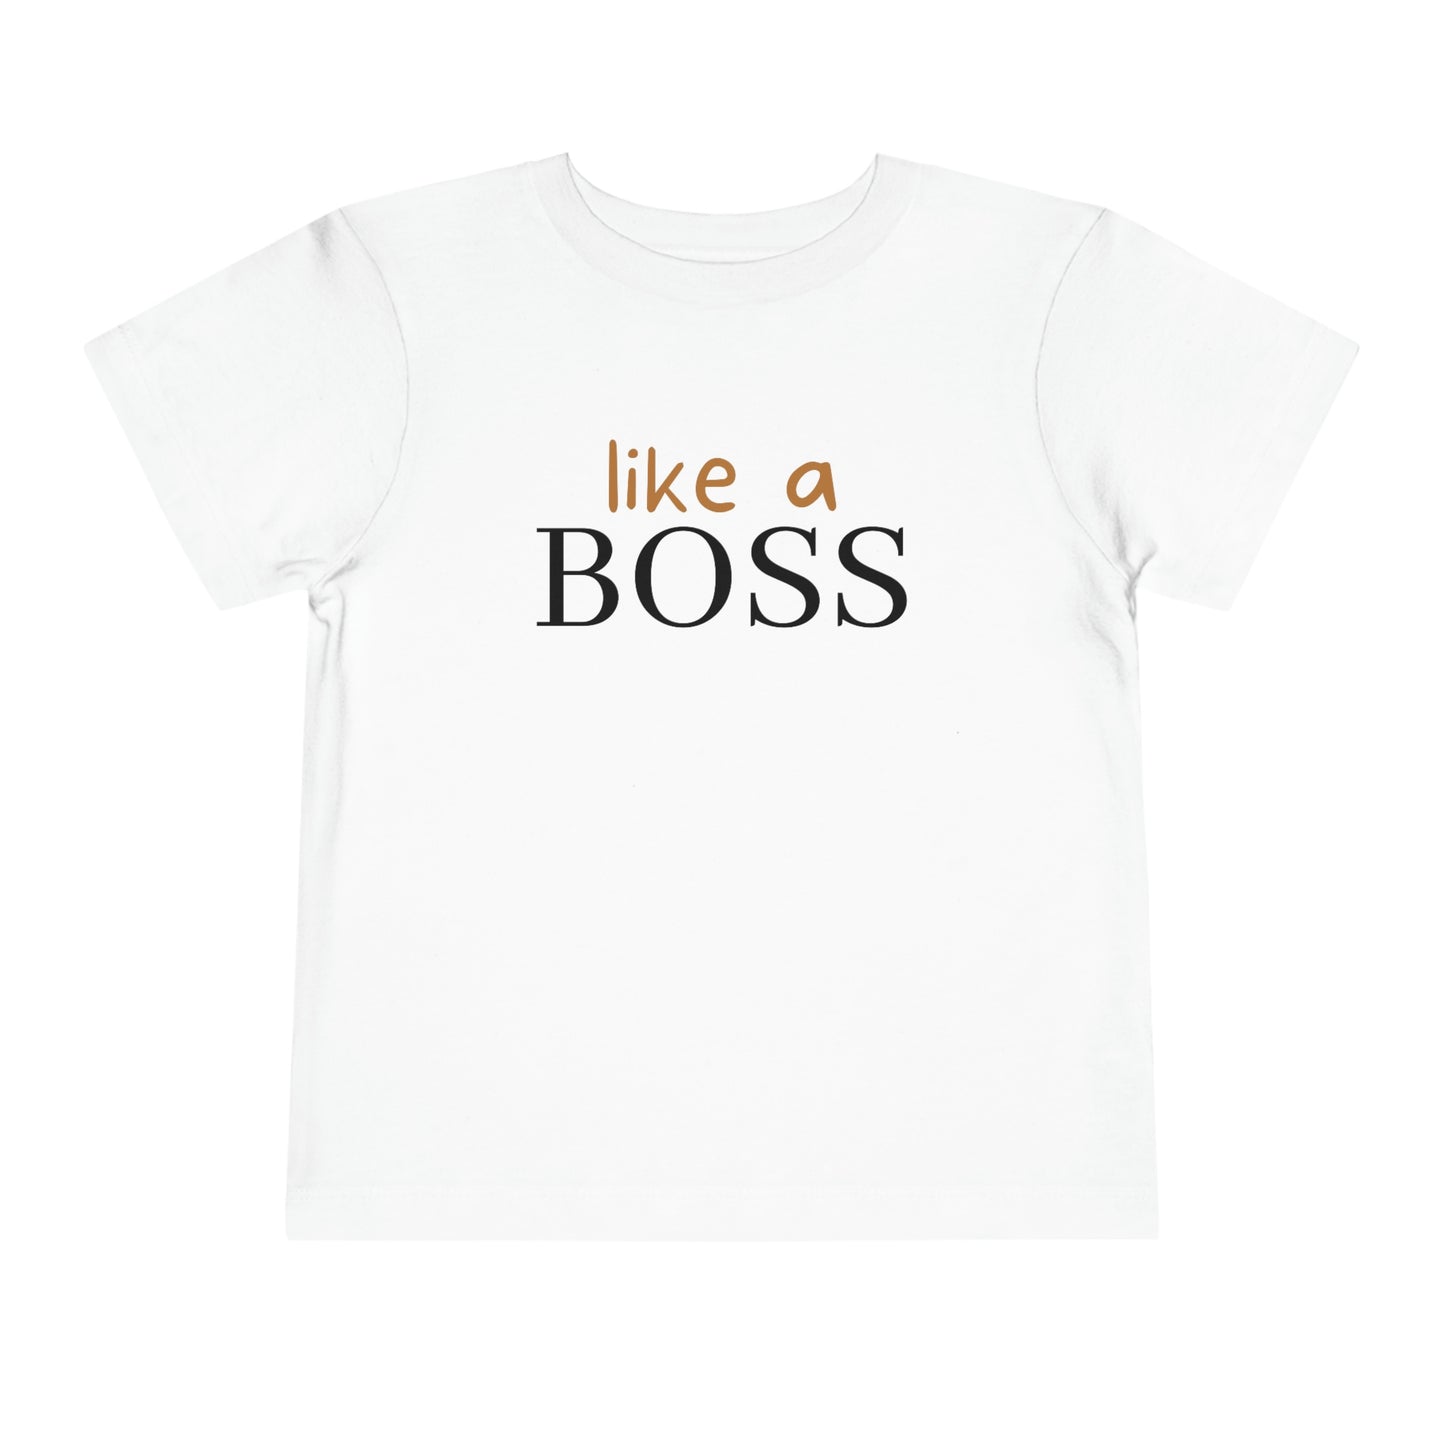 "Like a Boss" Toddler T-shirt